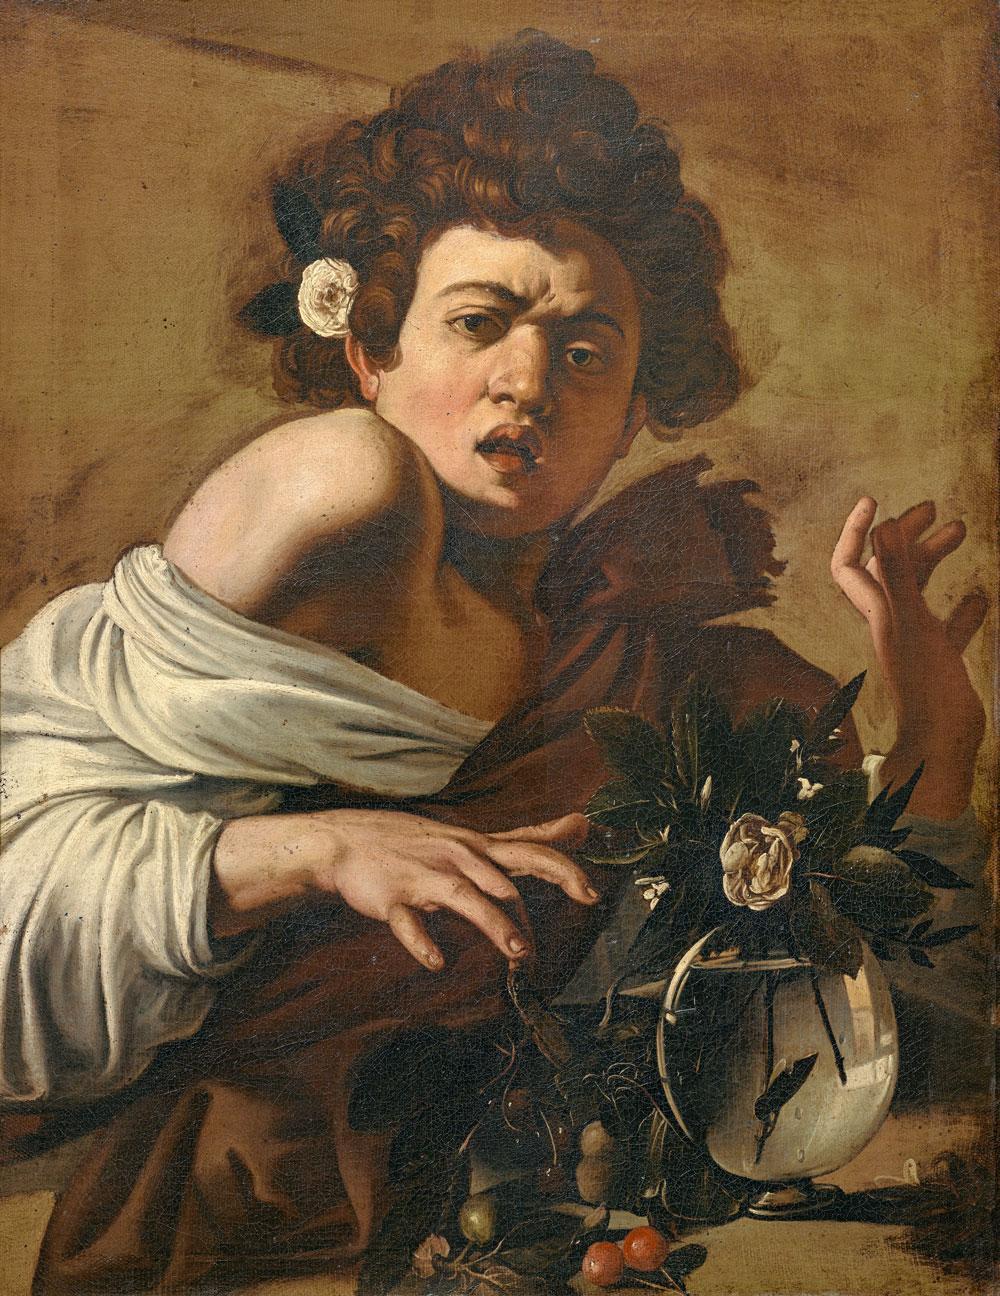 Le Caravage, Jeune garçon mordu par un lézard, 1594.